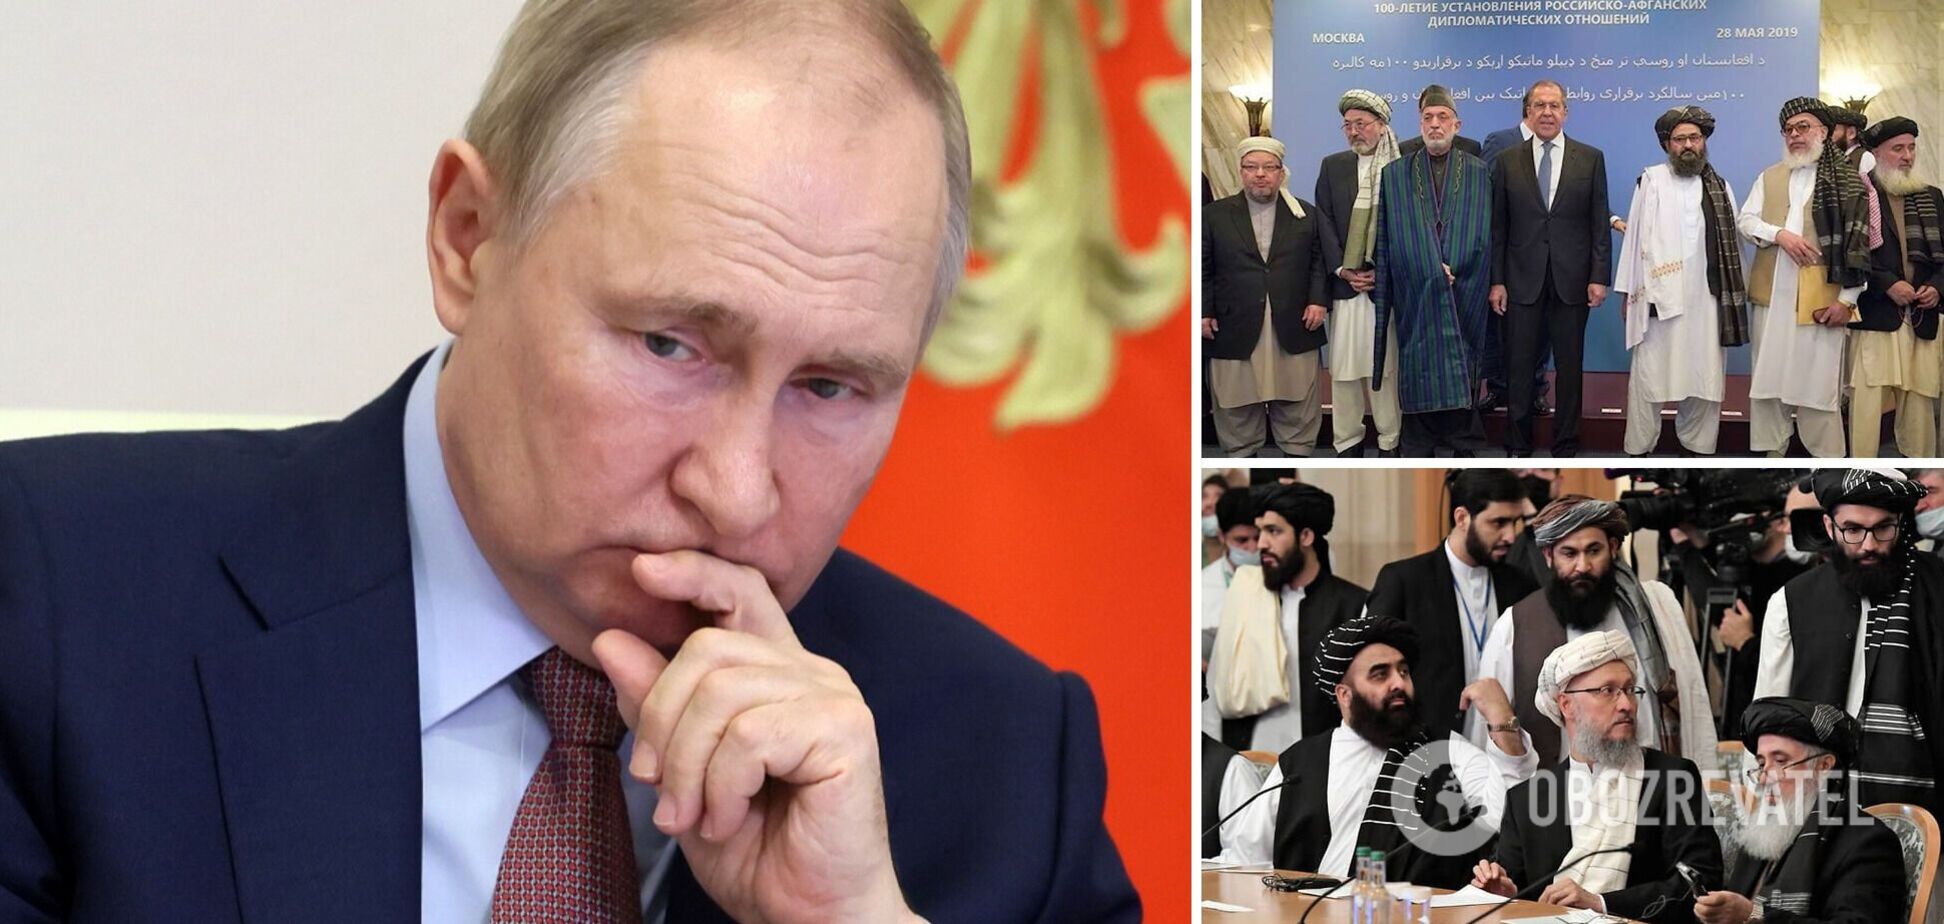 'Кокс закінчився?' Кремль зібрався говорити з 'Талібаном' про боротьбу з тероризмом, заяву жорстко висміяли в мережі